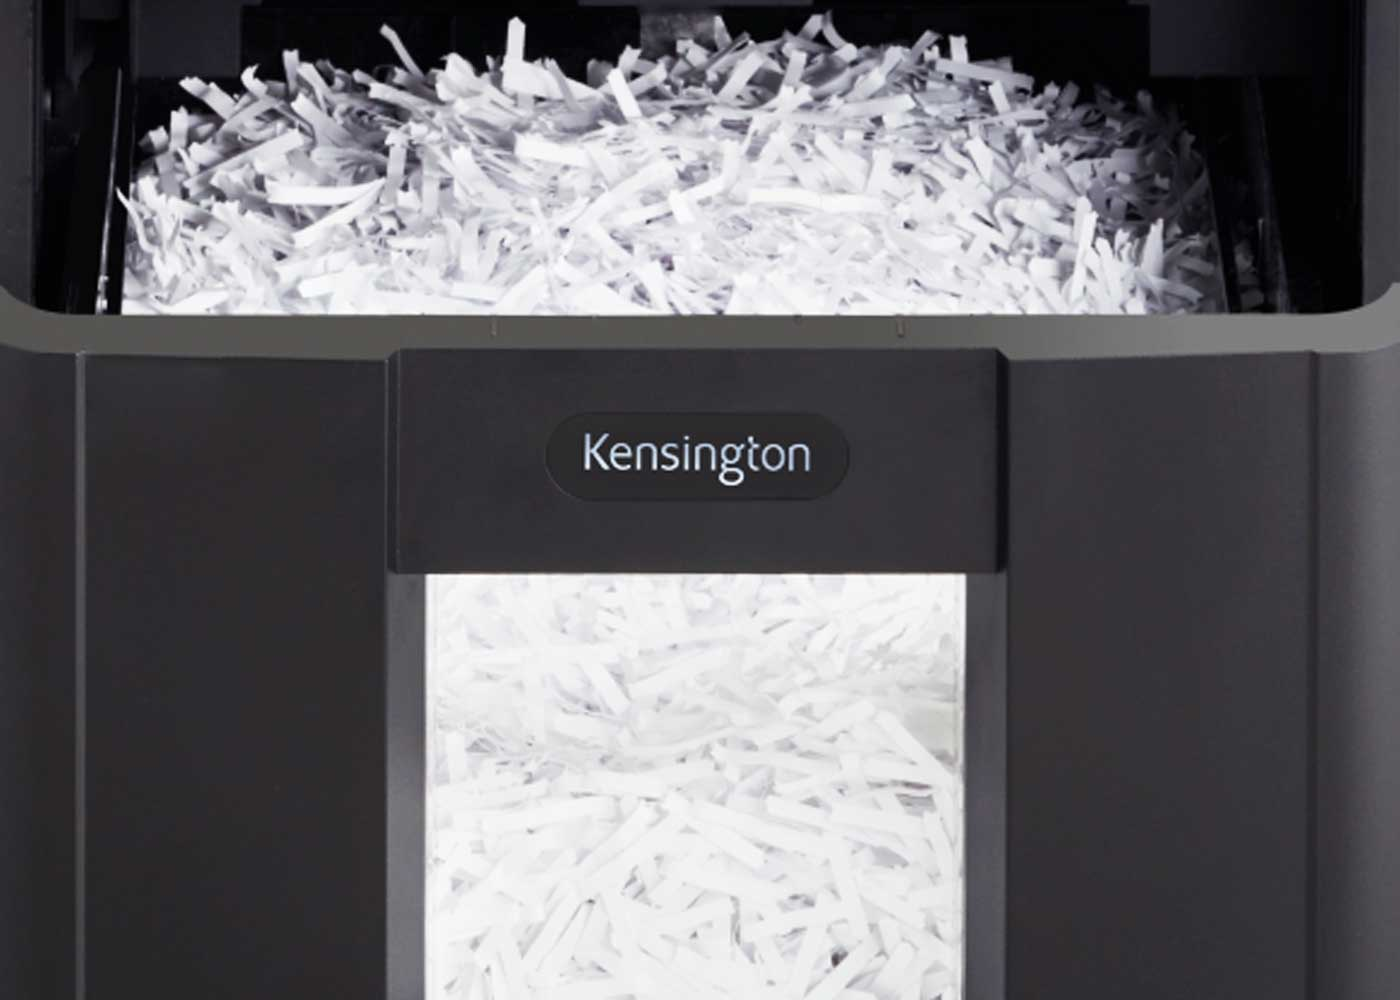 Kensington shredder with paper inside itself.